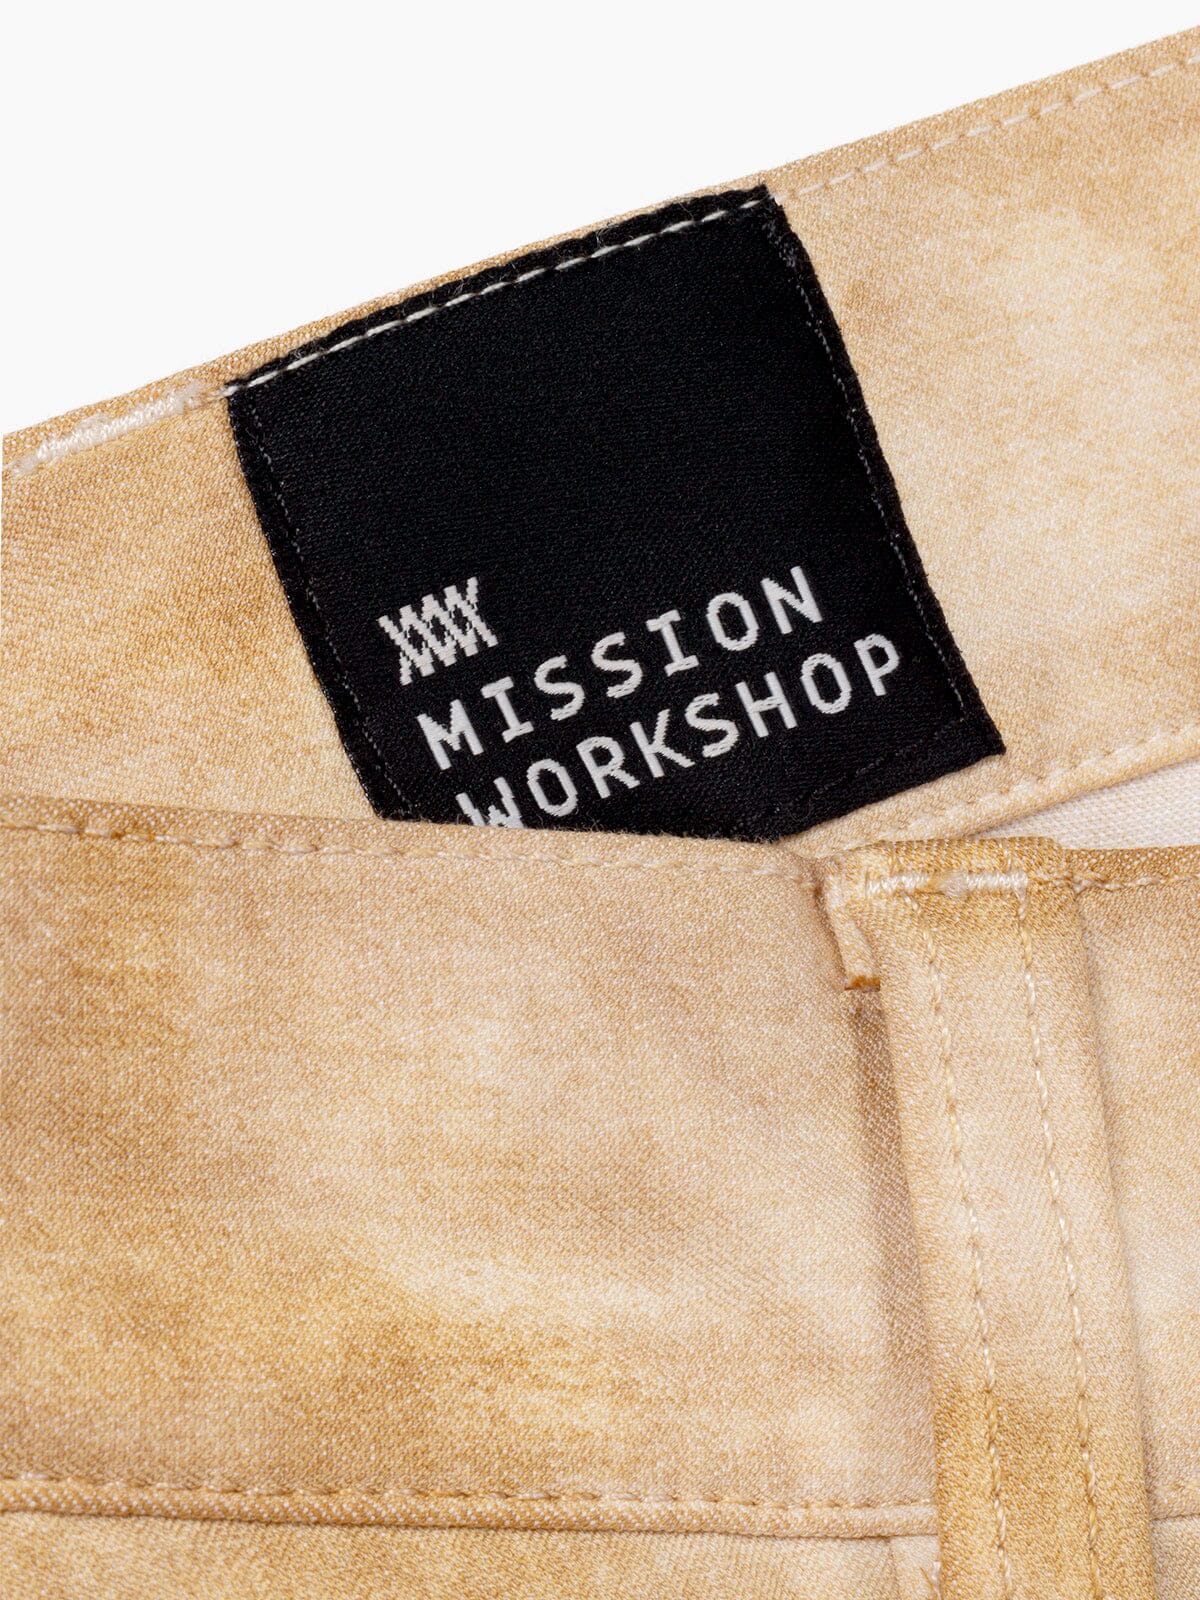 Paragon by Mission Workshop - Weatherproof Bags & Technical Apparel - San Francisco & Los Angeles - Construit pour durer - Garanti pour toujours